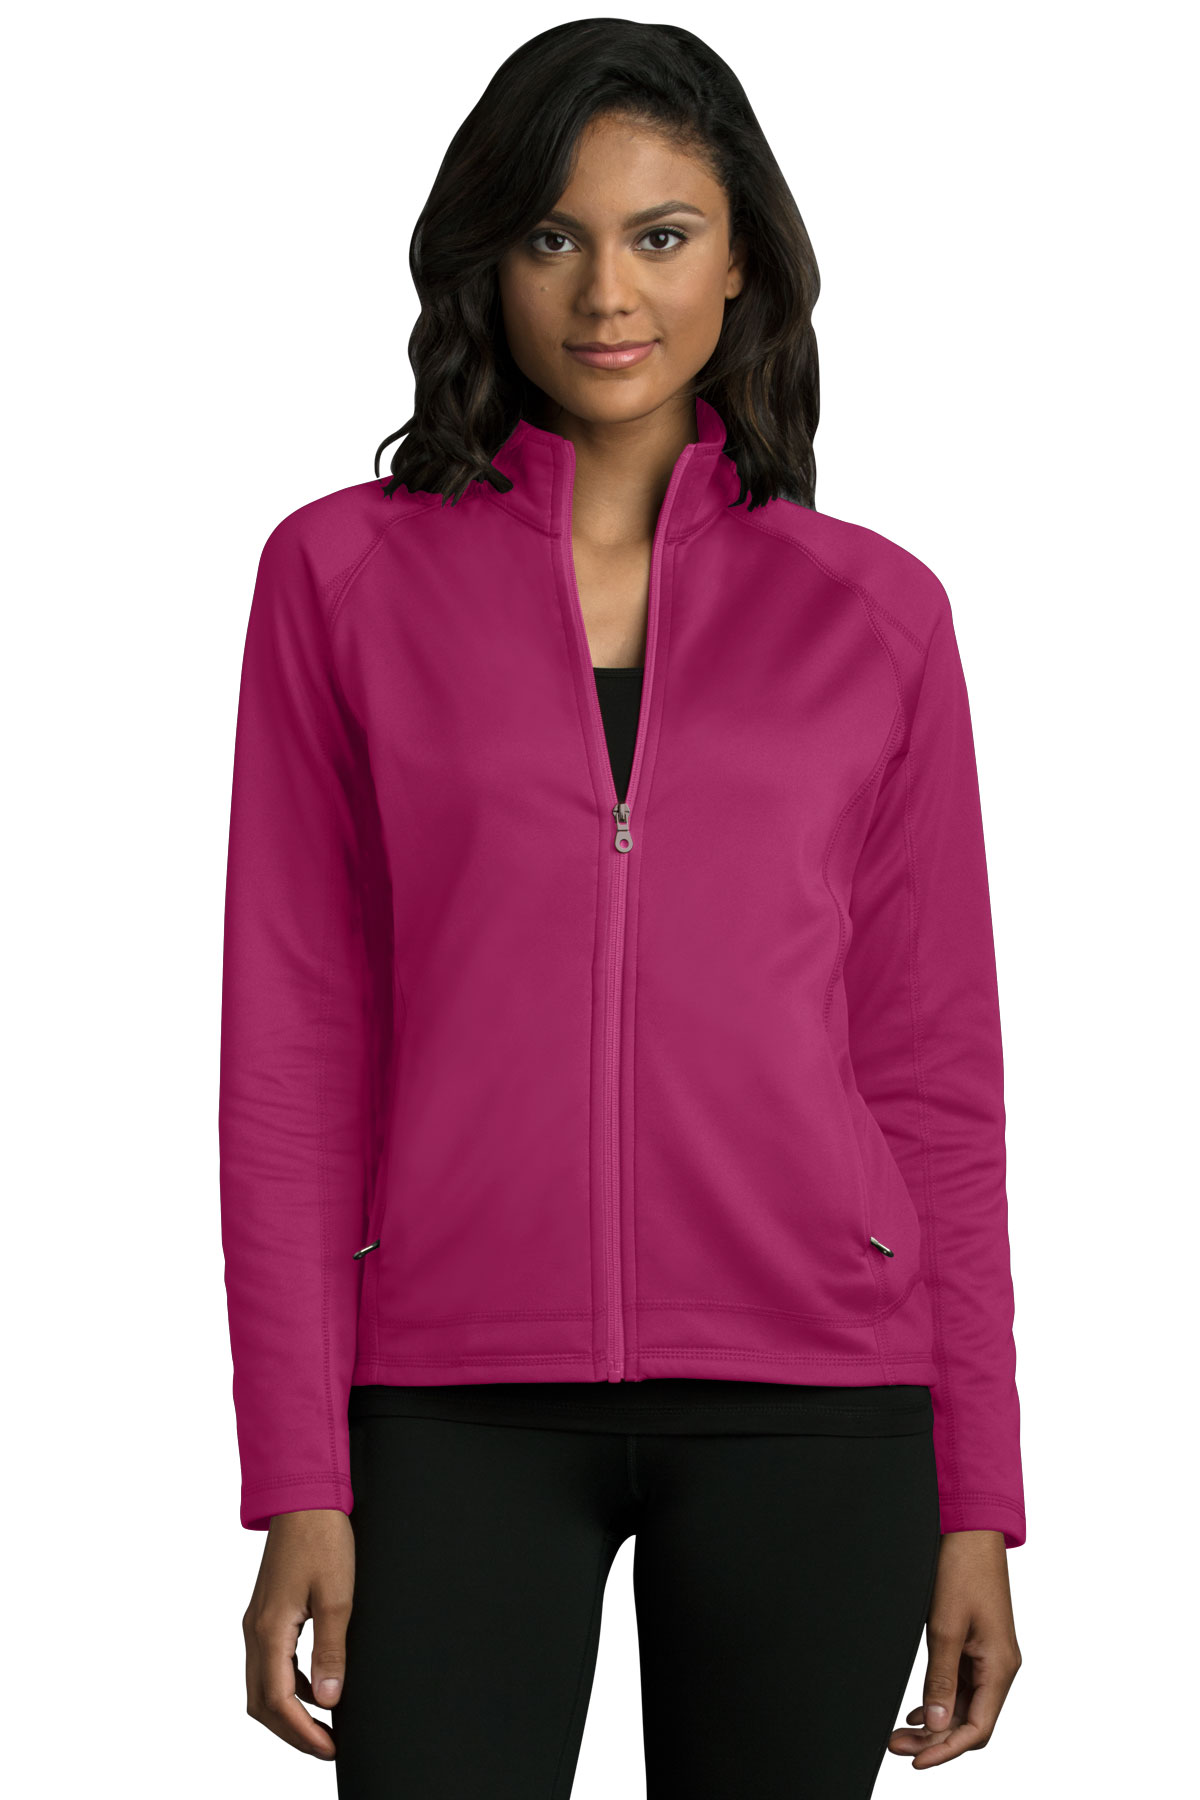 Women's Brushed Back Micro-Fleece Full-Zip Jacket - image 1 of 5